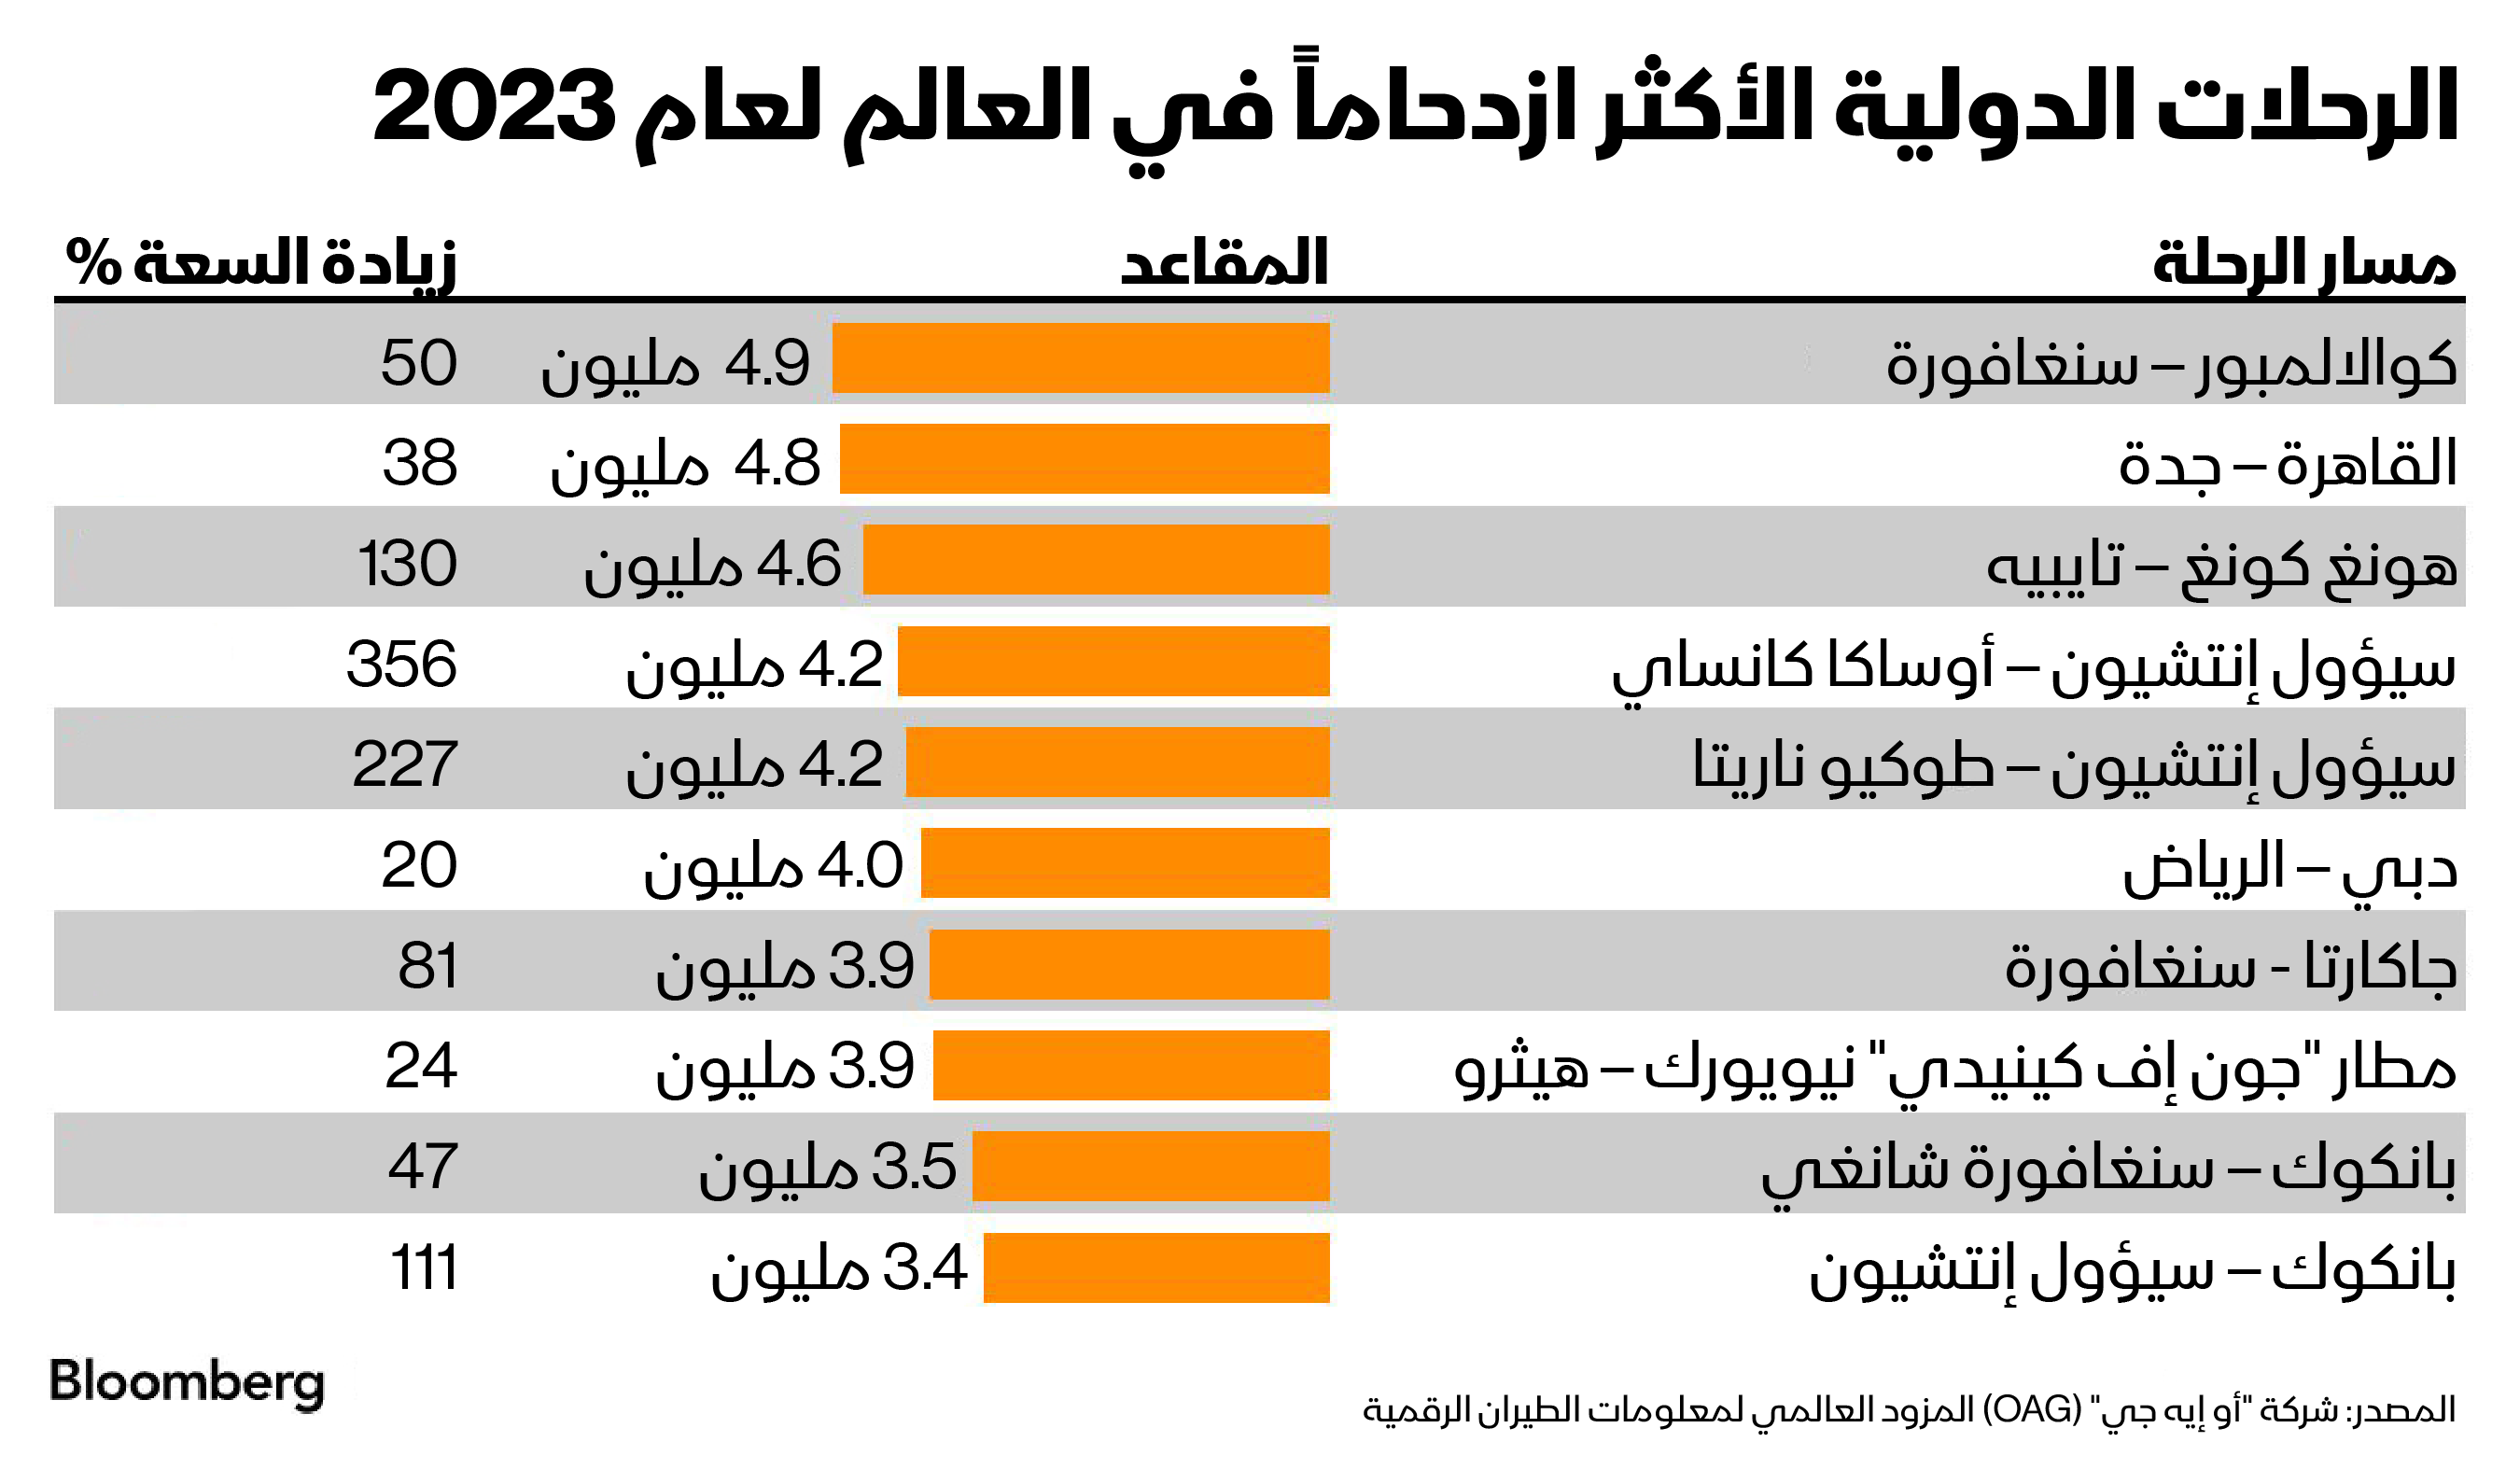 احتلت رحلات (القاهرة - جدة) المركز الثاني بين المسارات الجوية الأكثر ازدحاماً و(دبي-الرياض) في المرتية السادسة